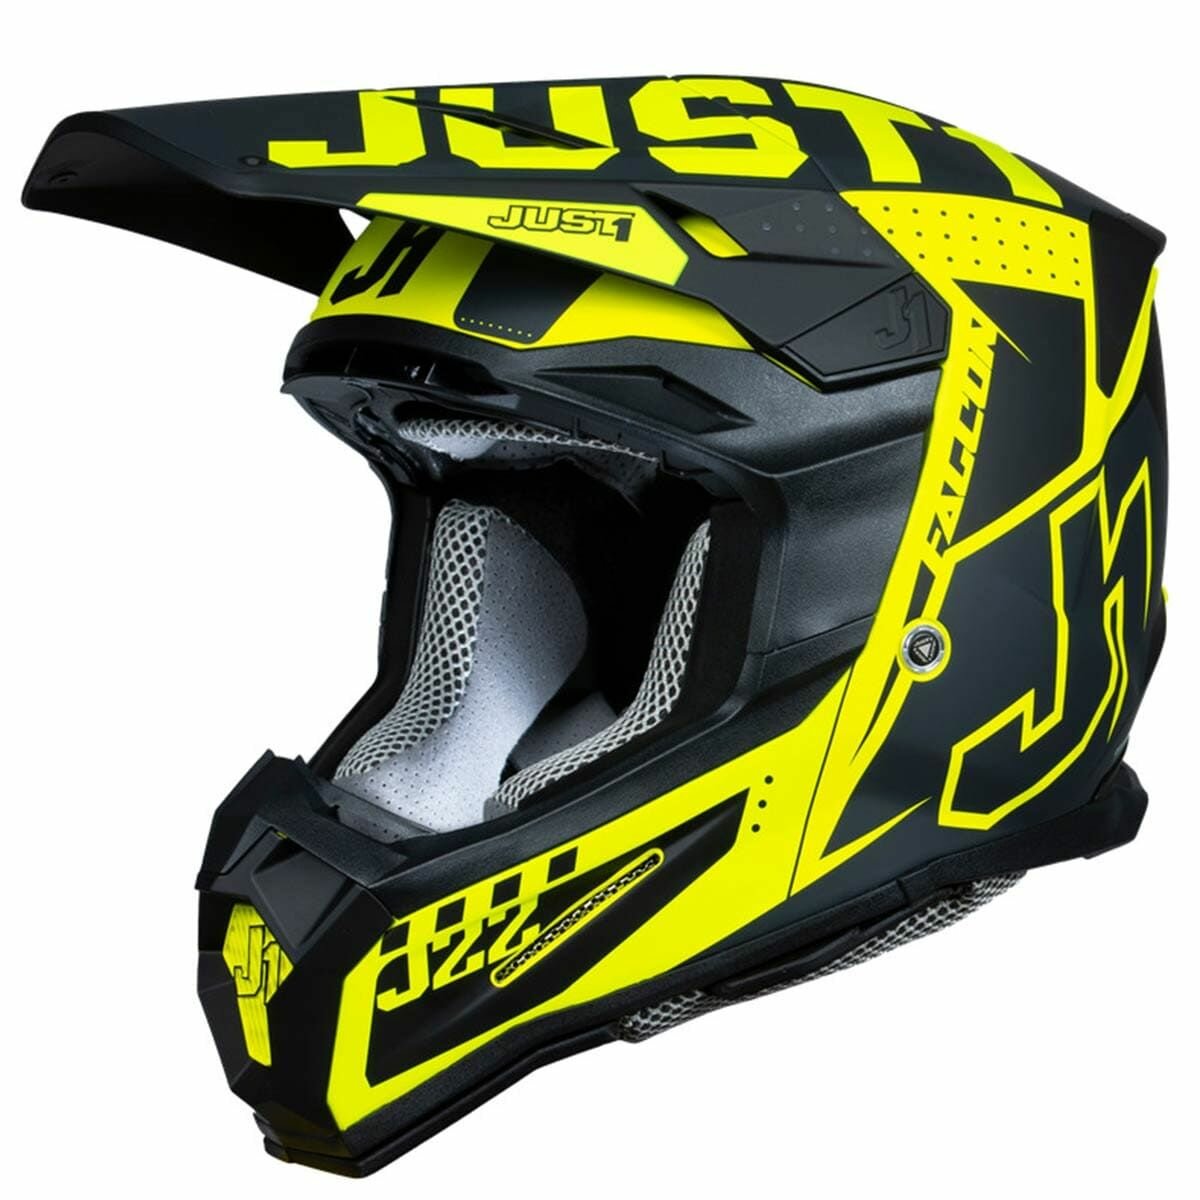 Шлем кроссовый JUST1 J22 F FALCON, черный/титановый/Hi-Vis желтый глянцевый, M